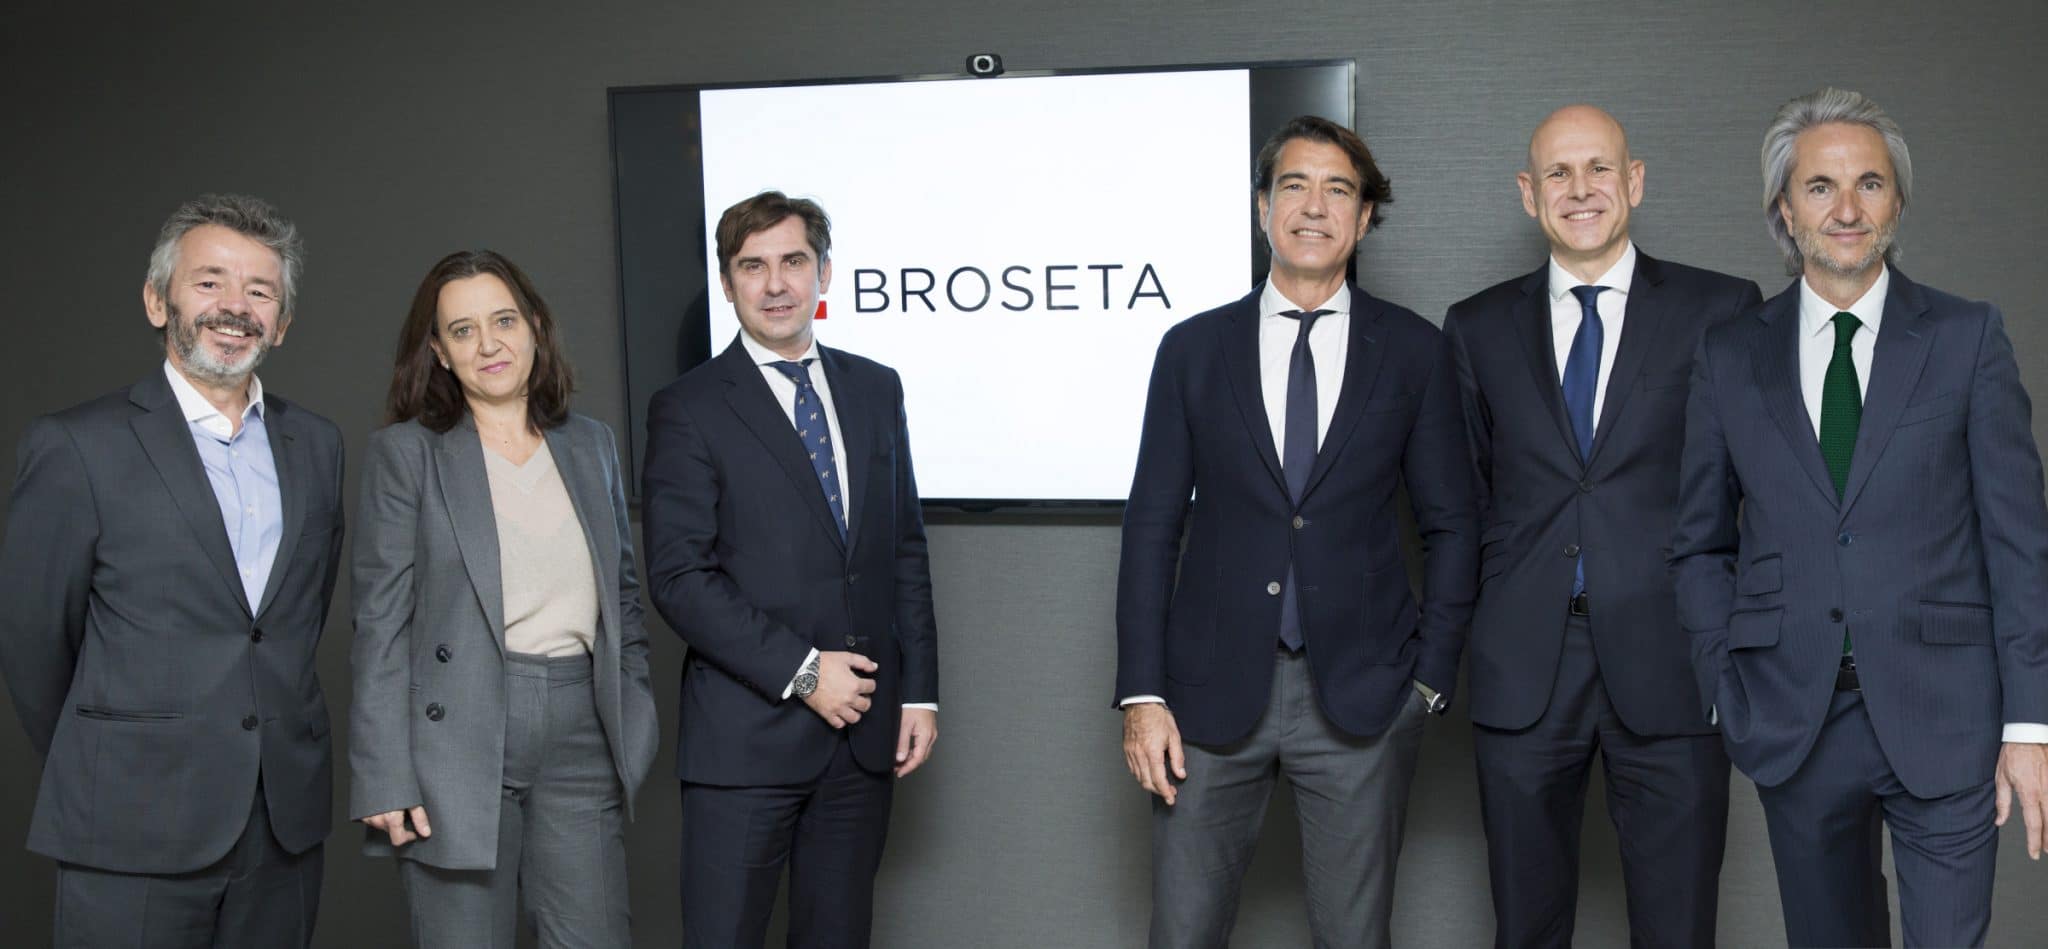 Rosa Vidal, socia directora de Broseta, satisfecha al integrar los equipos que dejan Andersen Barcelona